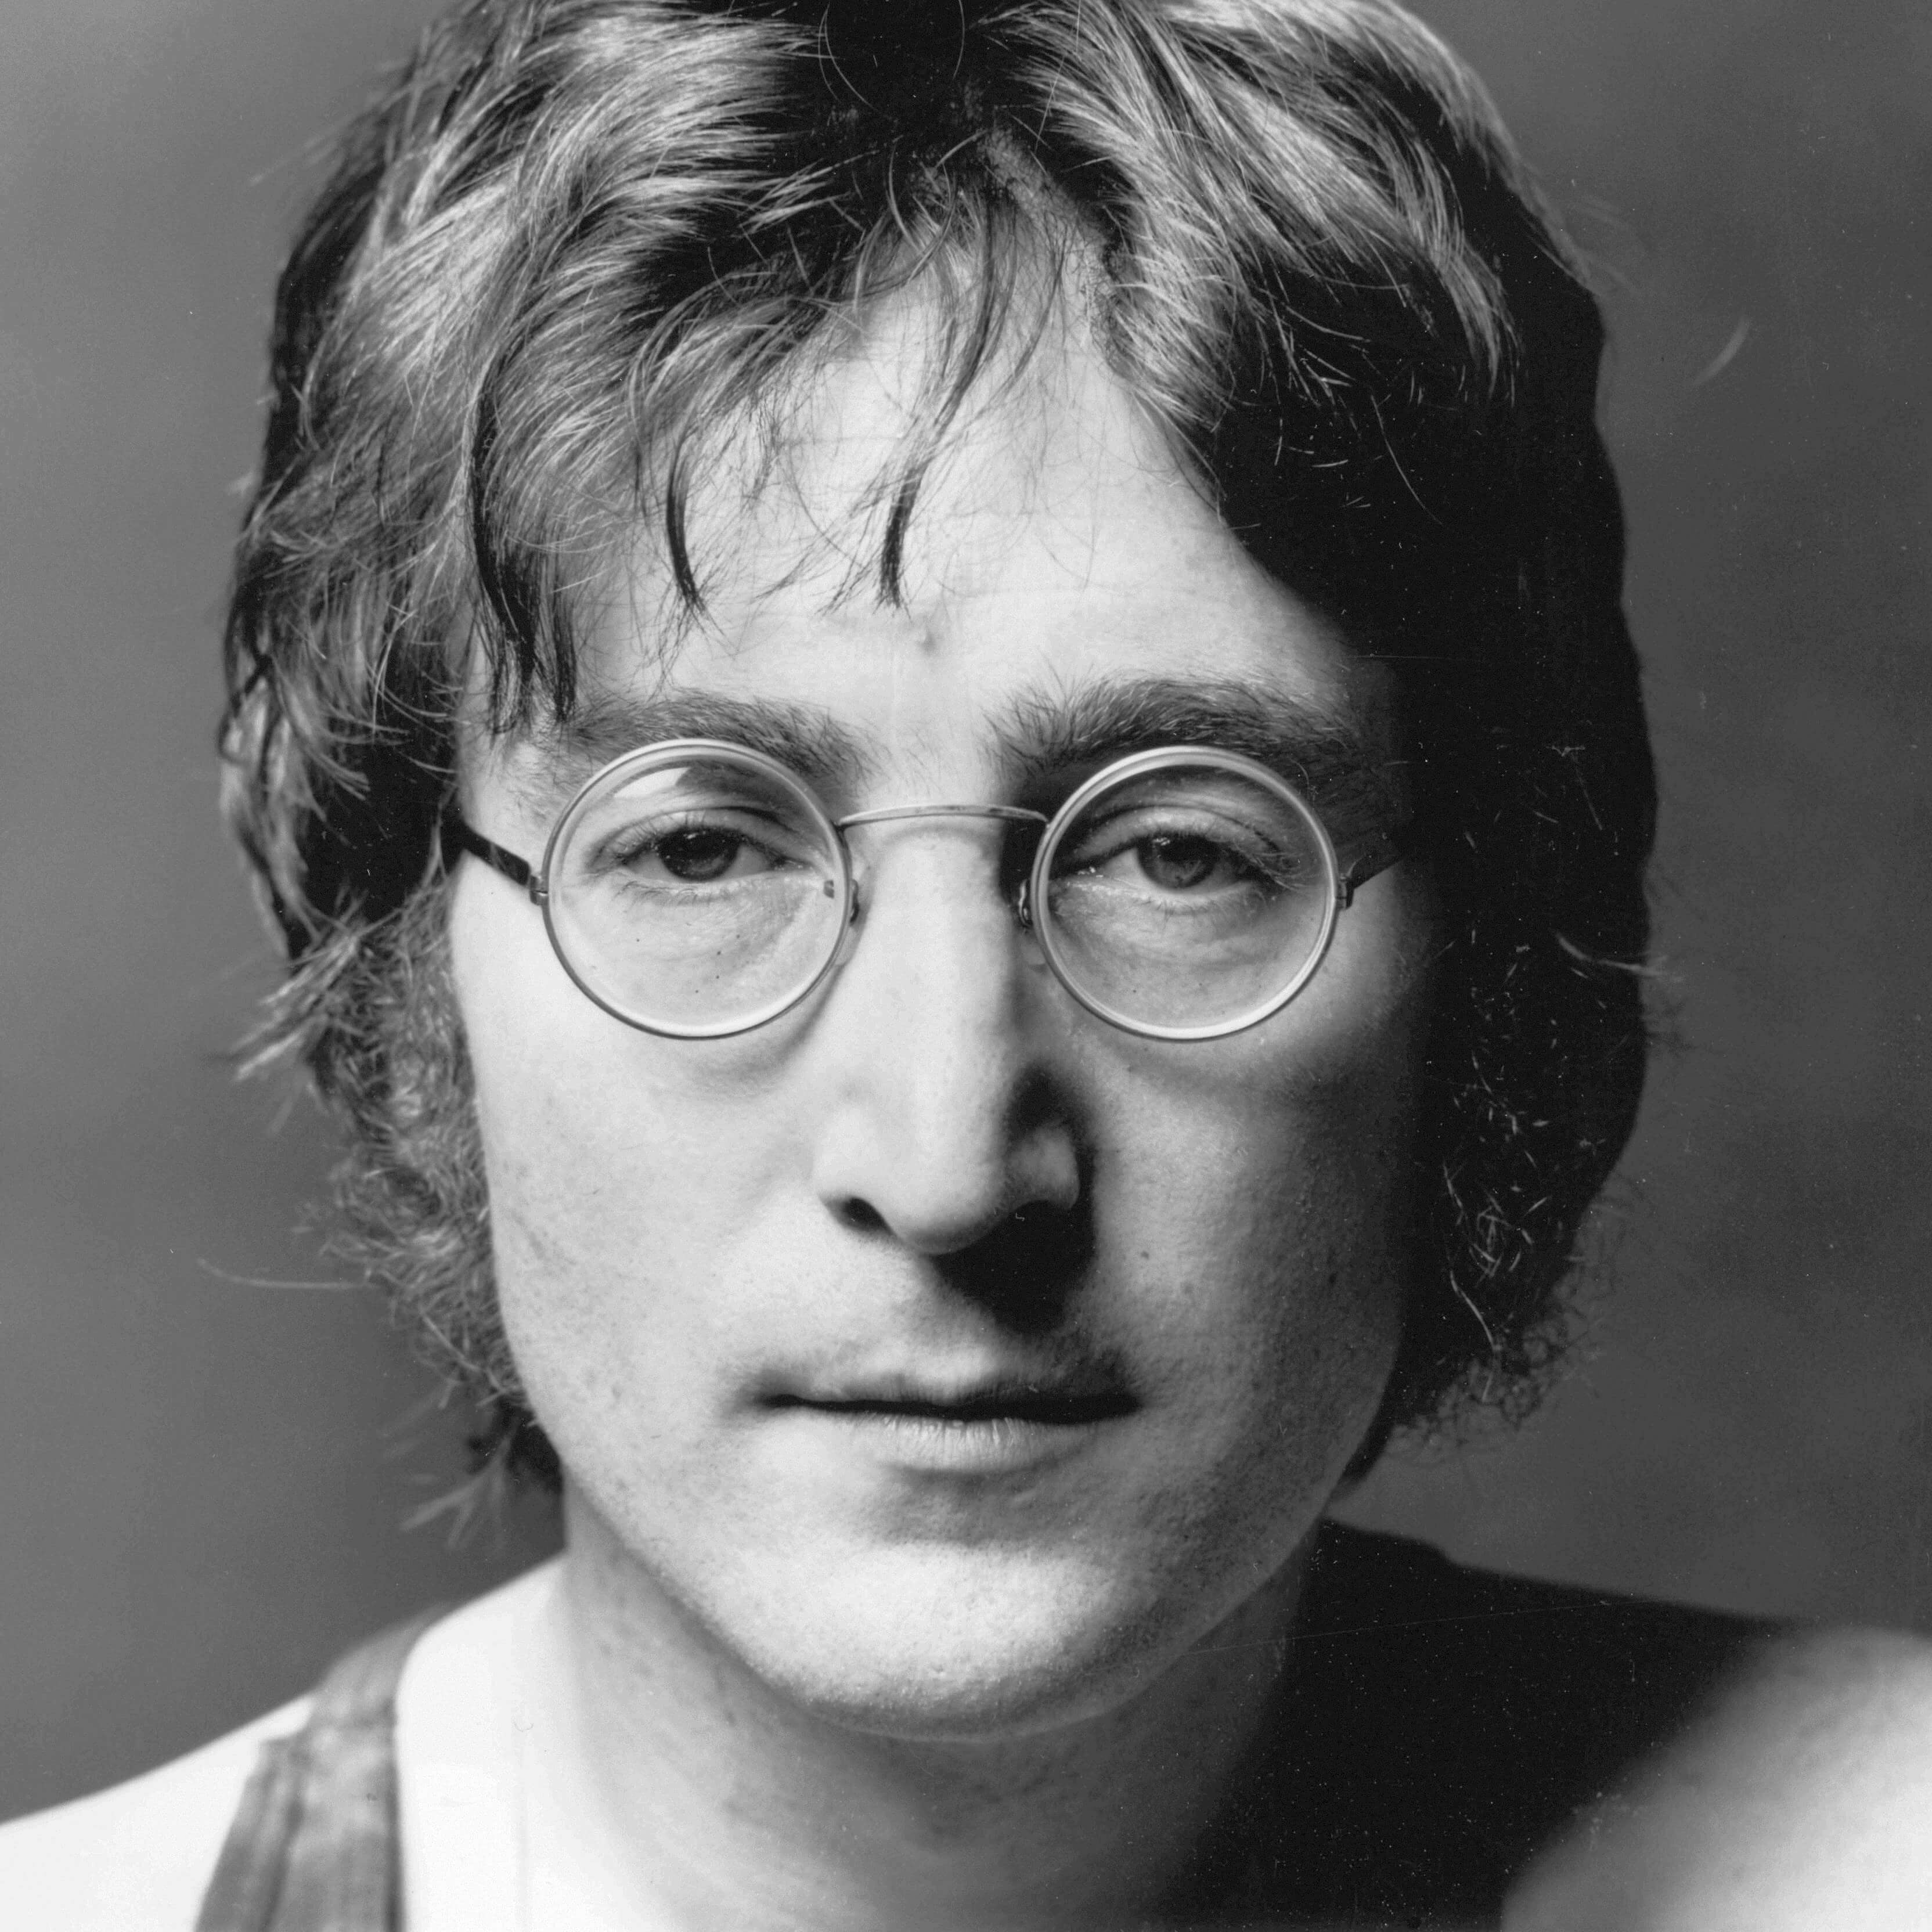 John Lennon Biography • Singer • Profile